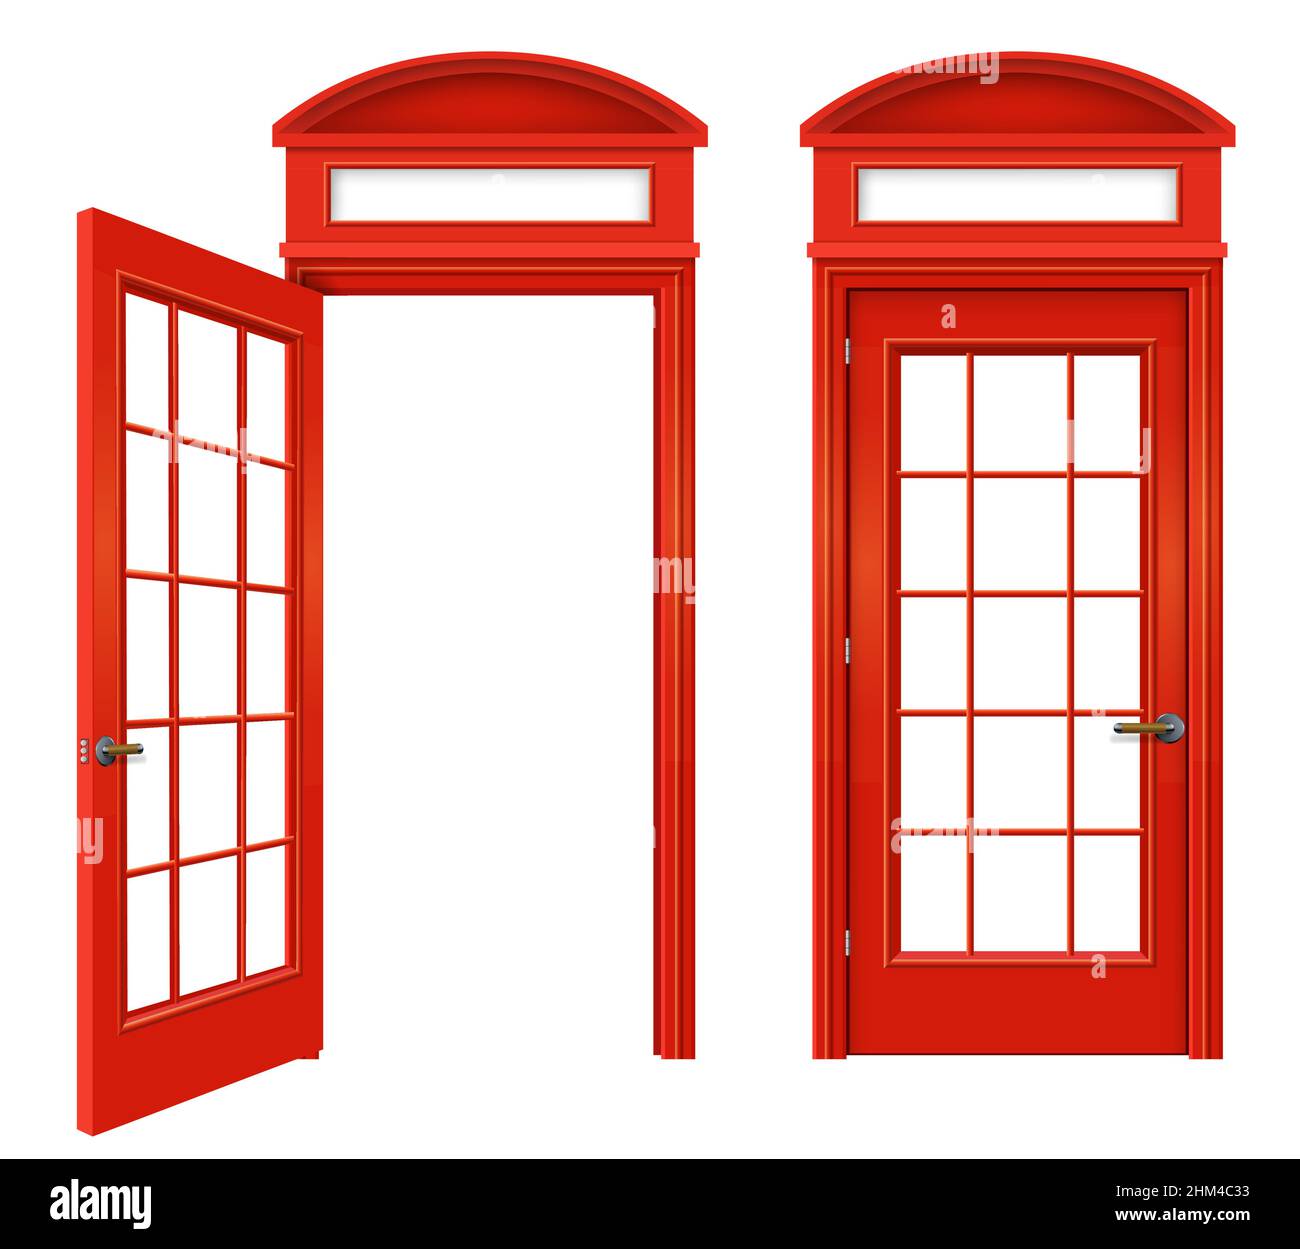 Rote klassische englische Telefonzelle. Street of London. Fassaden. Transparenzeffekt. Eingestellt Stock Vektor